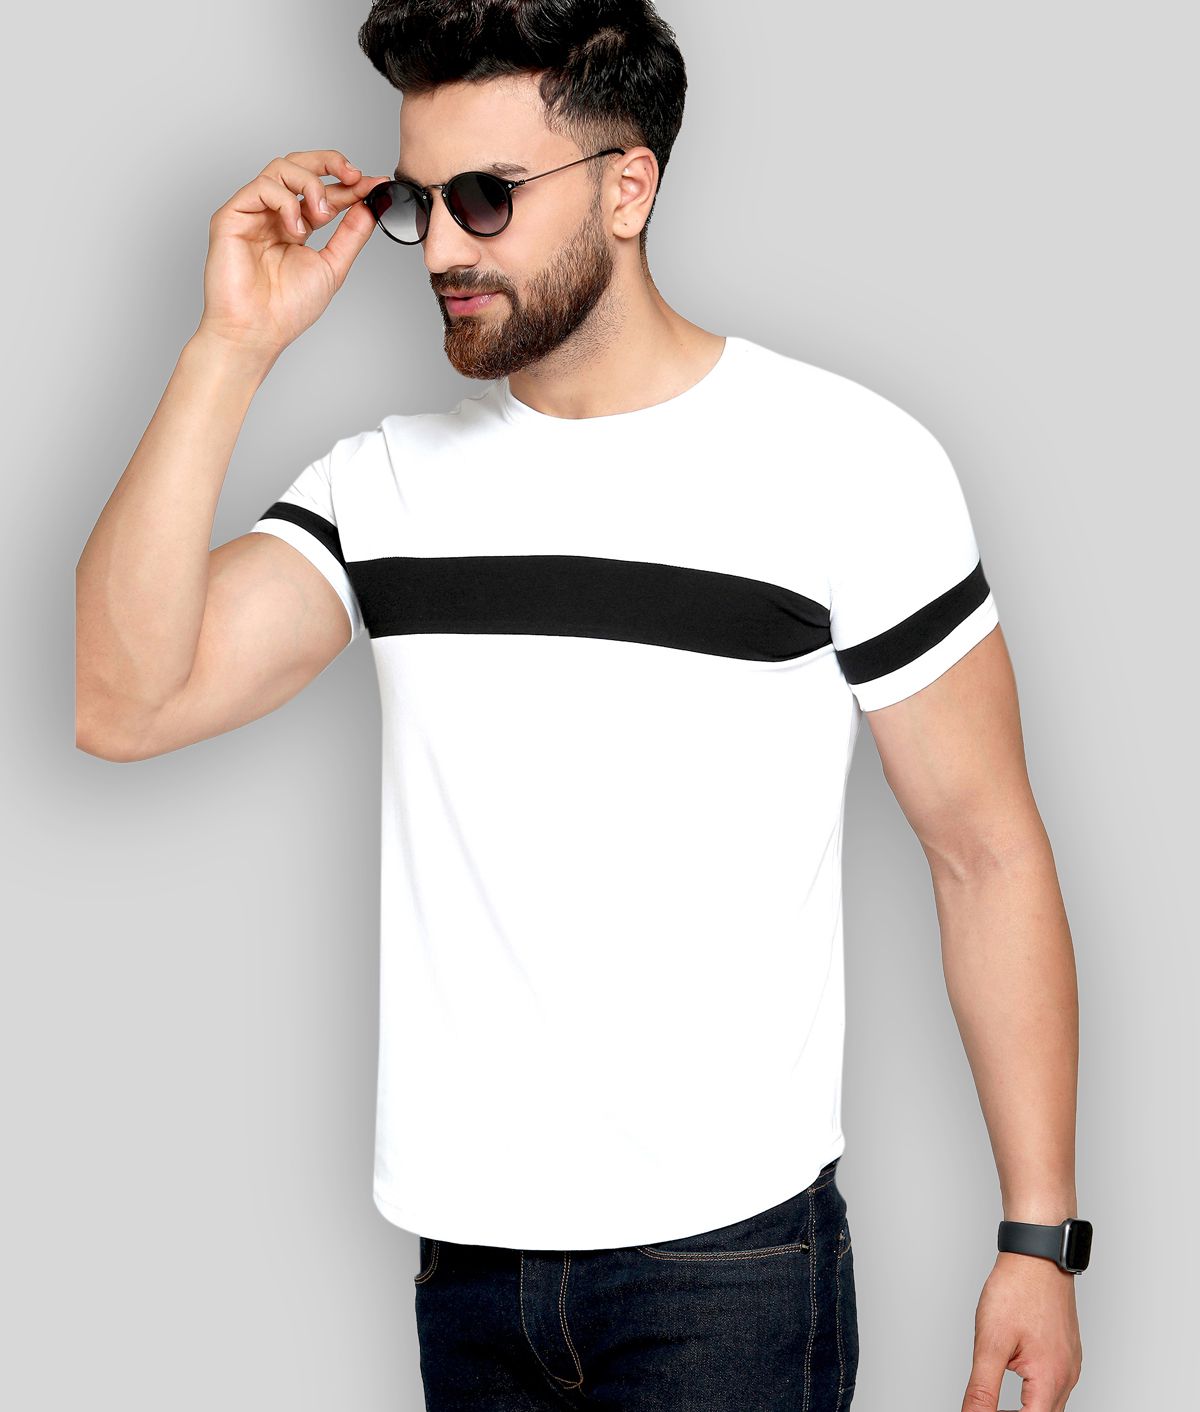     			AUSK - Multicolor Cotton Regular Fit Men's T-Shirt ( Pack of 1 )